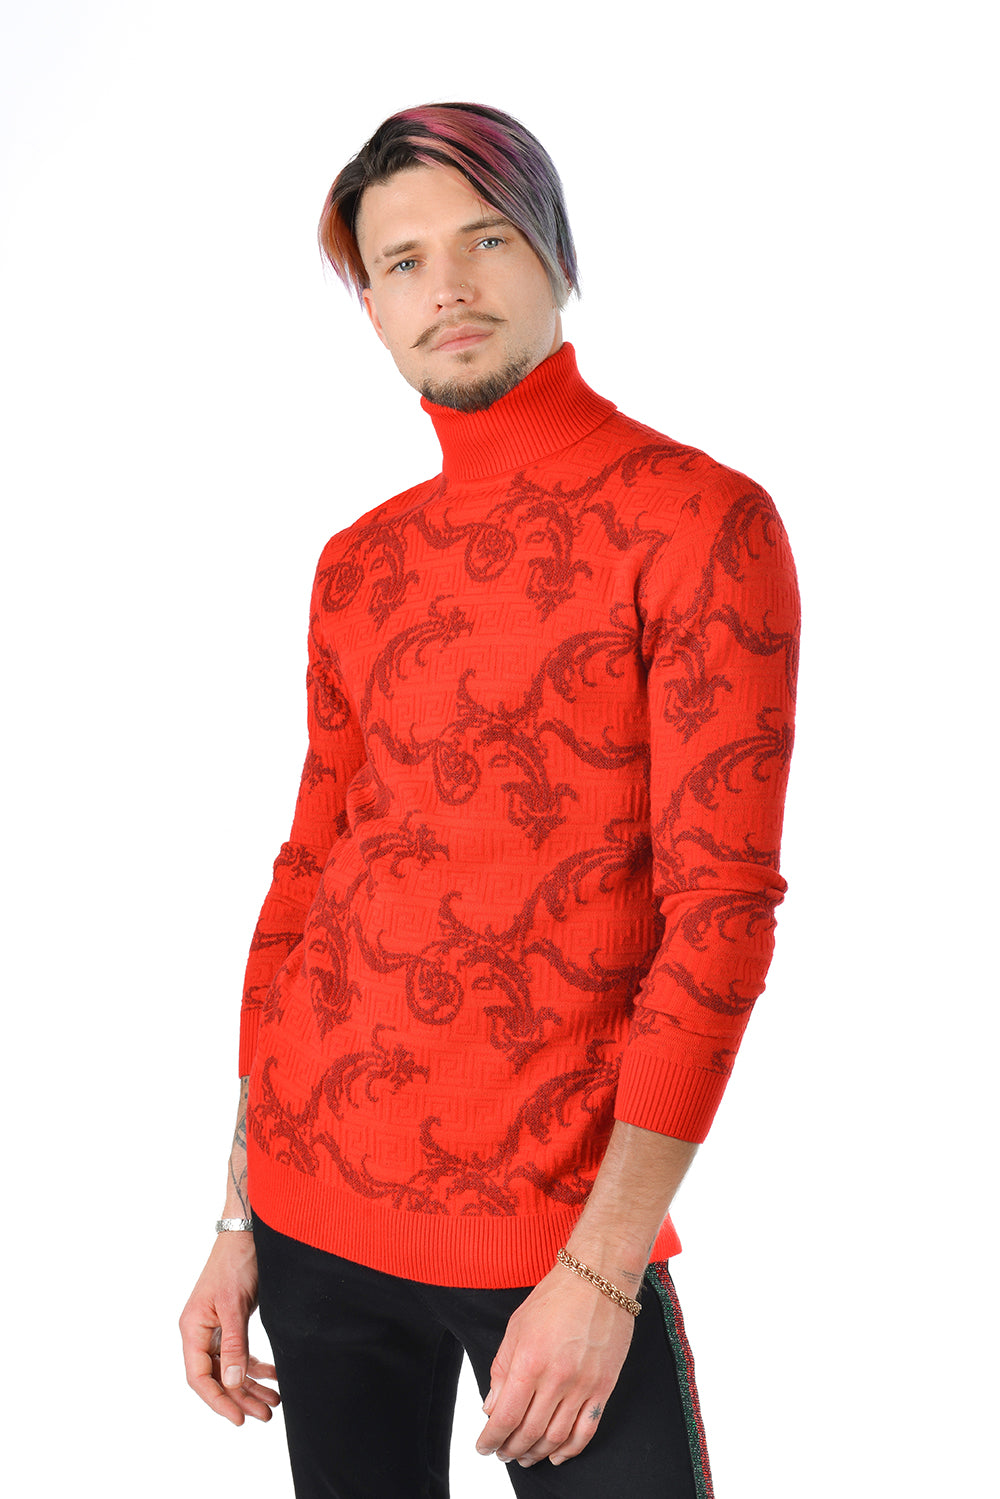 Barabas Men's Floral Print Design Long Sleeve Turtleneck Sweater 2LS2102 Red